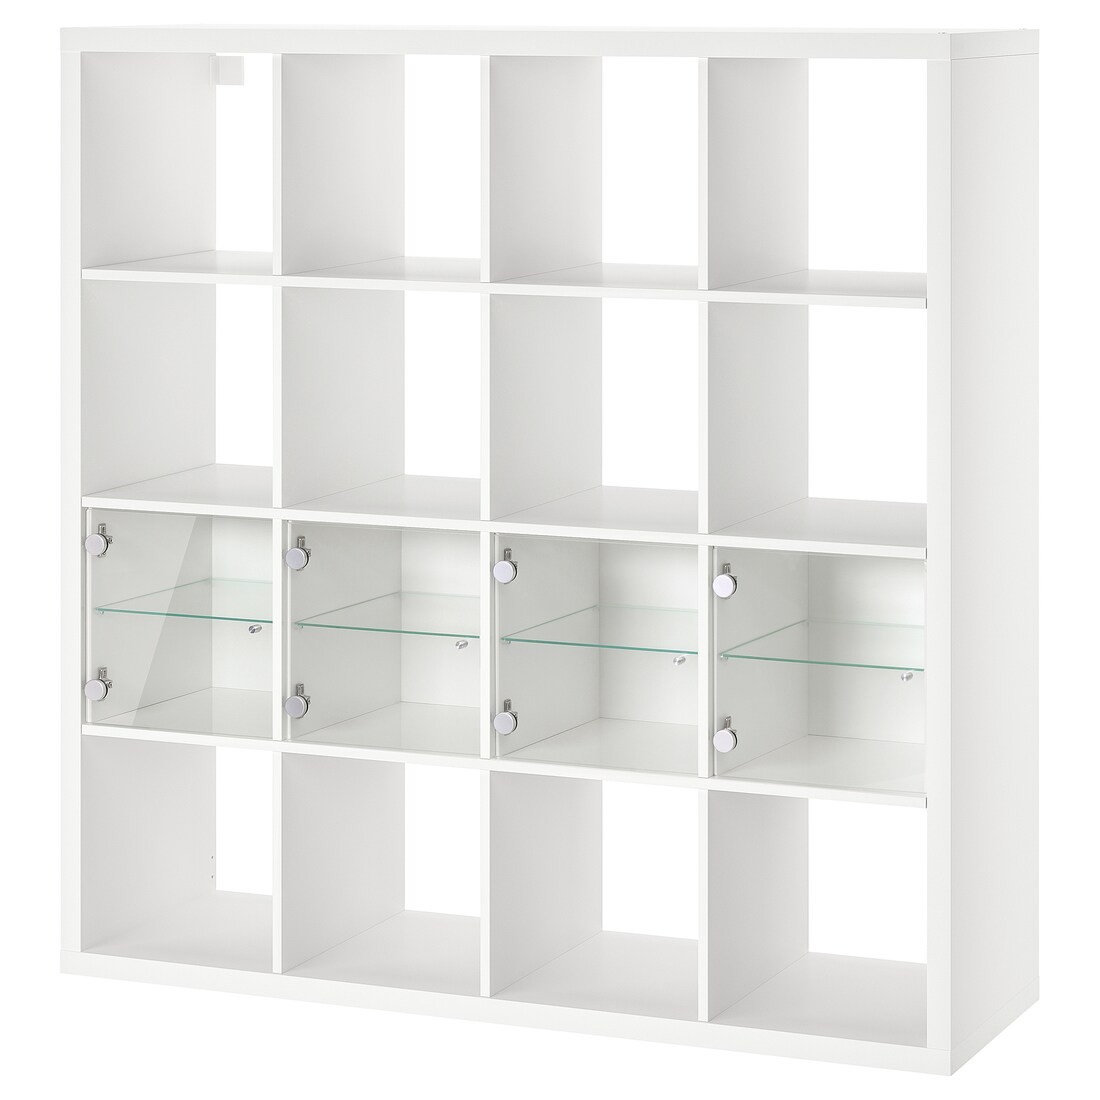 KALLAX Стеллаж с 4 вставками, белый / стекло, 147x147 см